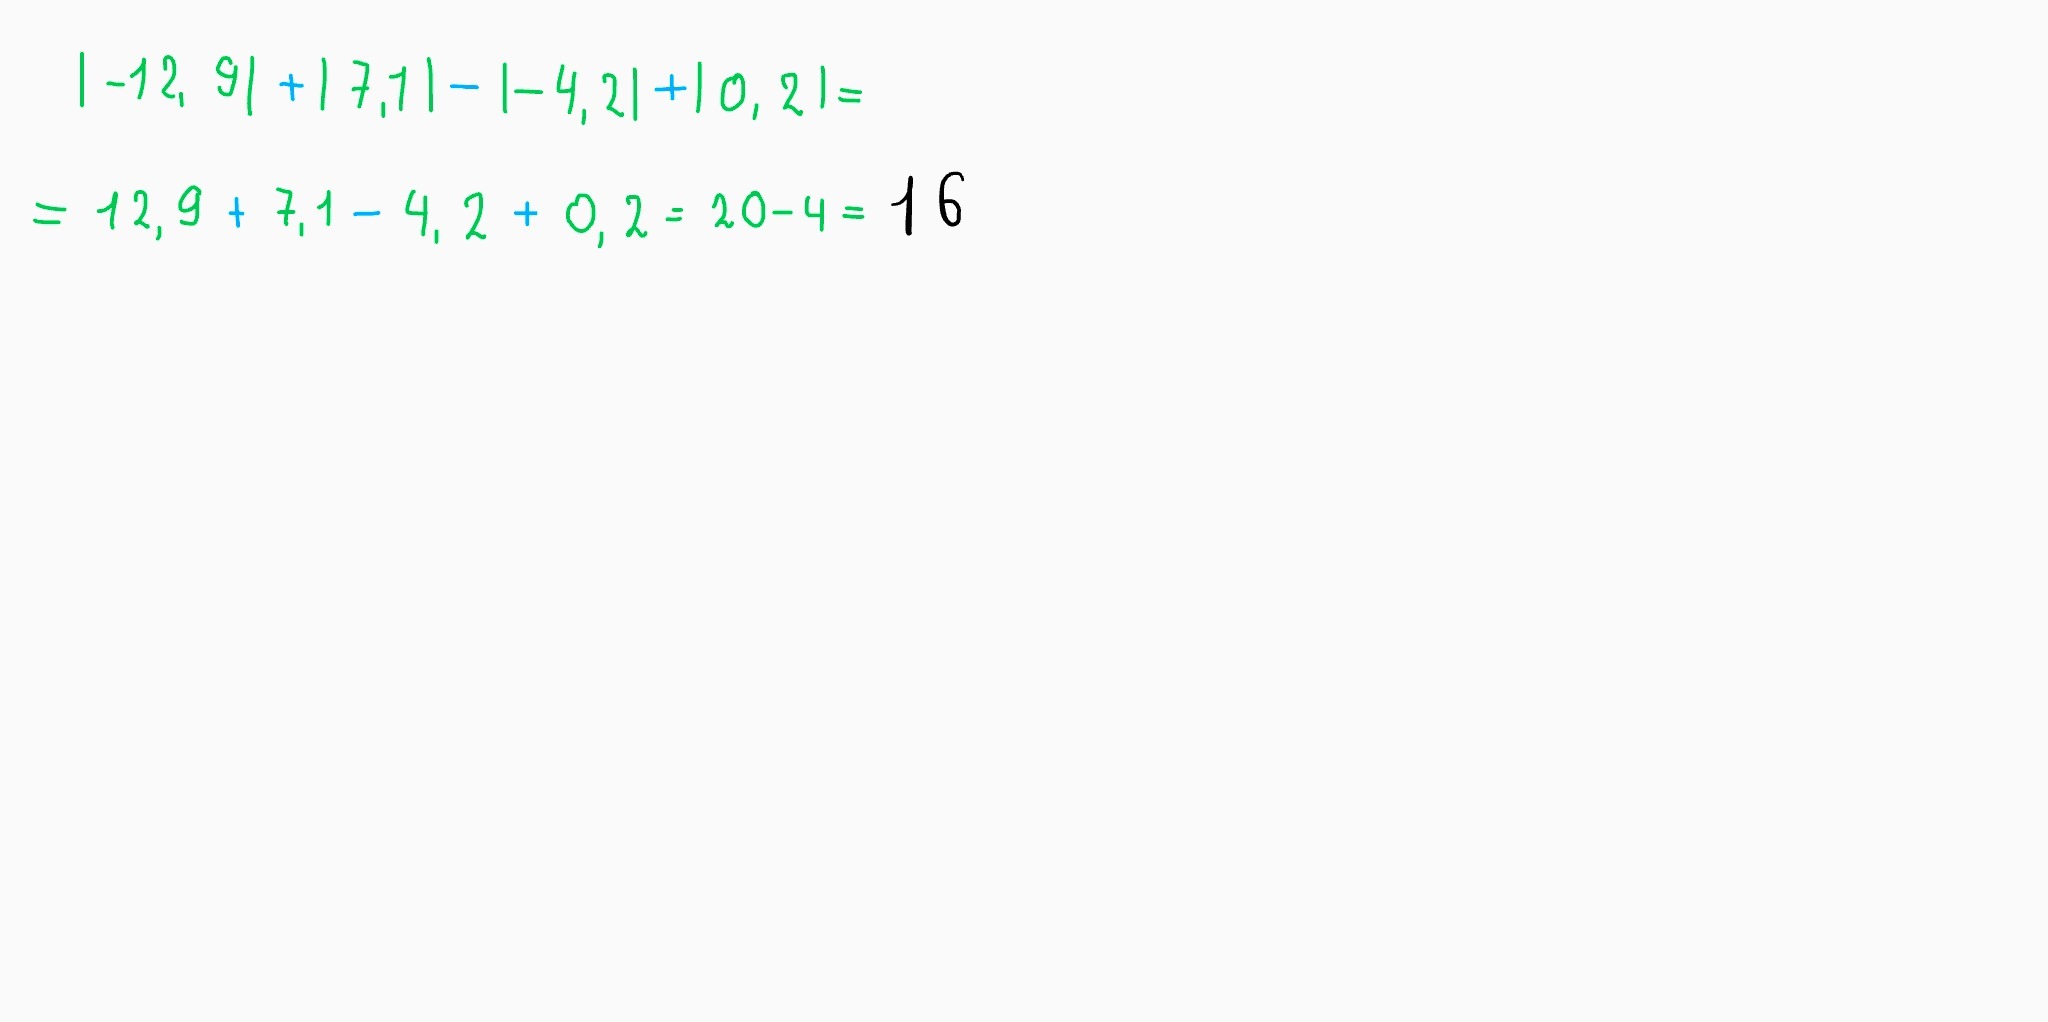 Вычислить 12 2 5. Вычисли |12,9| + |7,1|. Вычислите 12 1/4- 7 1/3+1 1/6. Вычисли /-12.9/+/7.1/-/-4.2/+/0.2/. Вычислить12 1/3•11/2•33/4•41/5.